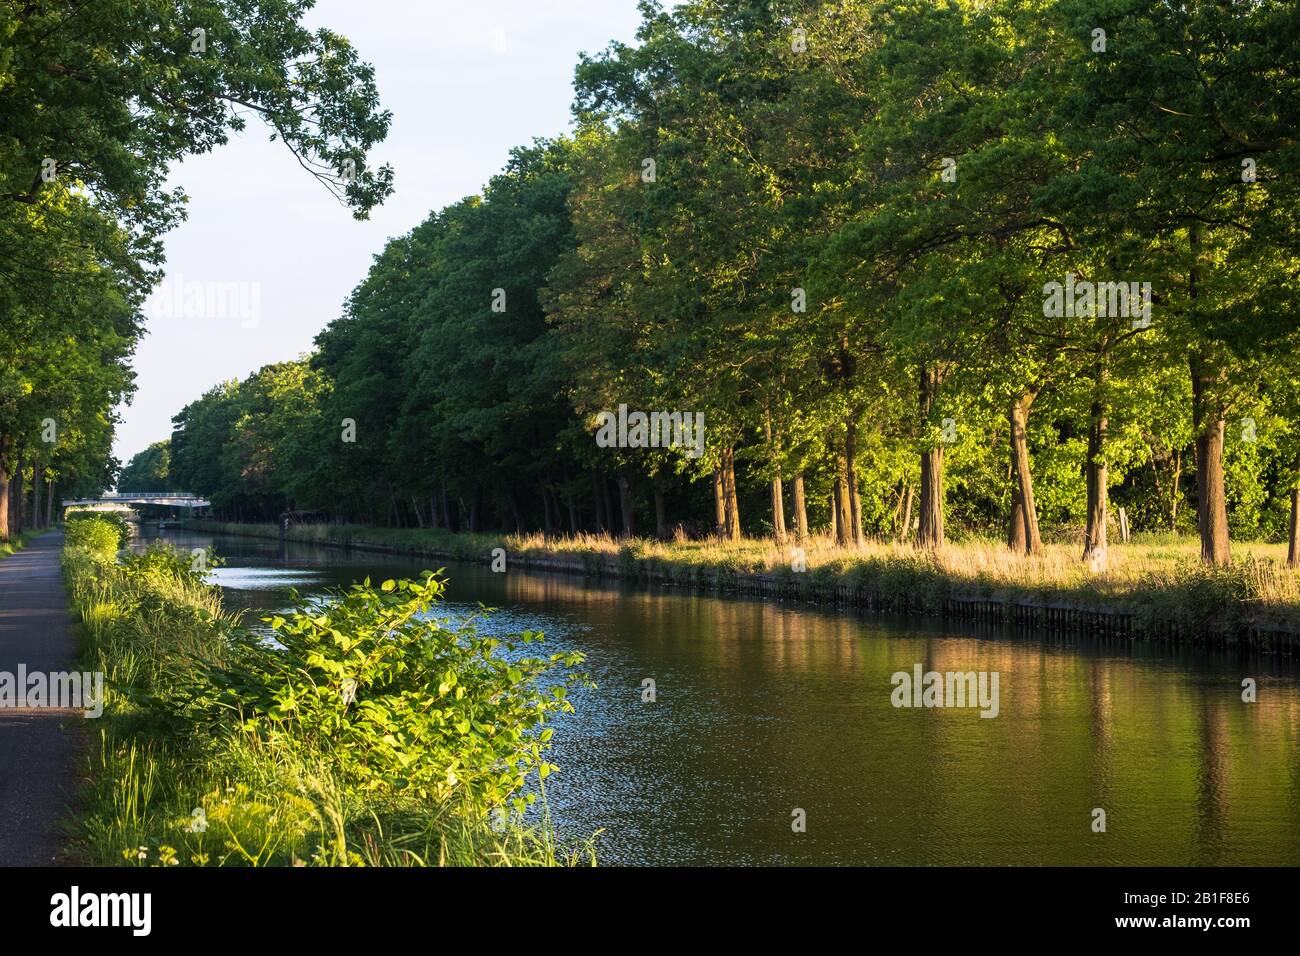 Friedlicher Abschnitt des Dessel-Turnhout-Schoten-Kanals. Ein Wander- und Radweg liegt am Wasser entlang, reiche grüne Bäume runden das Bild ab. Stockfoto